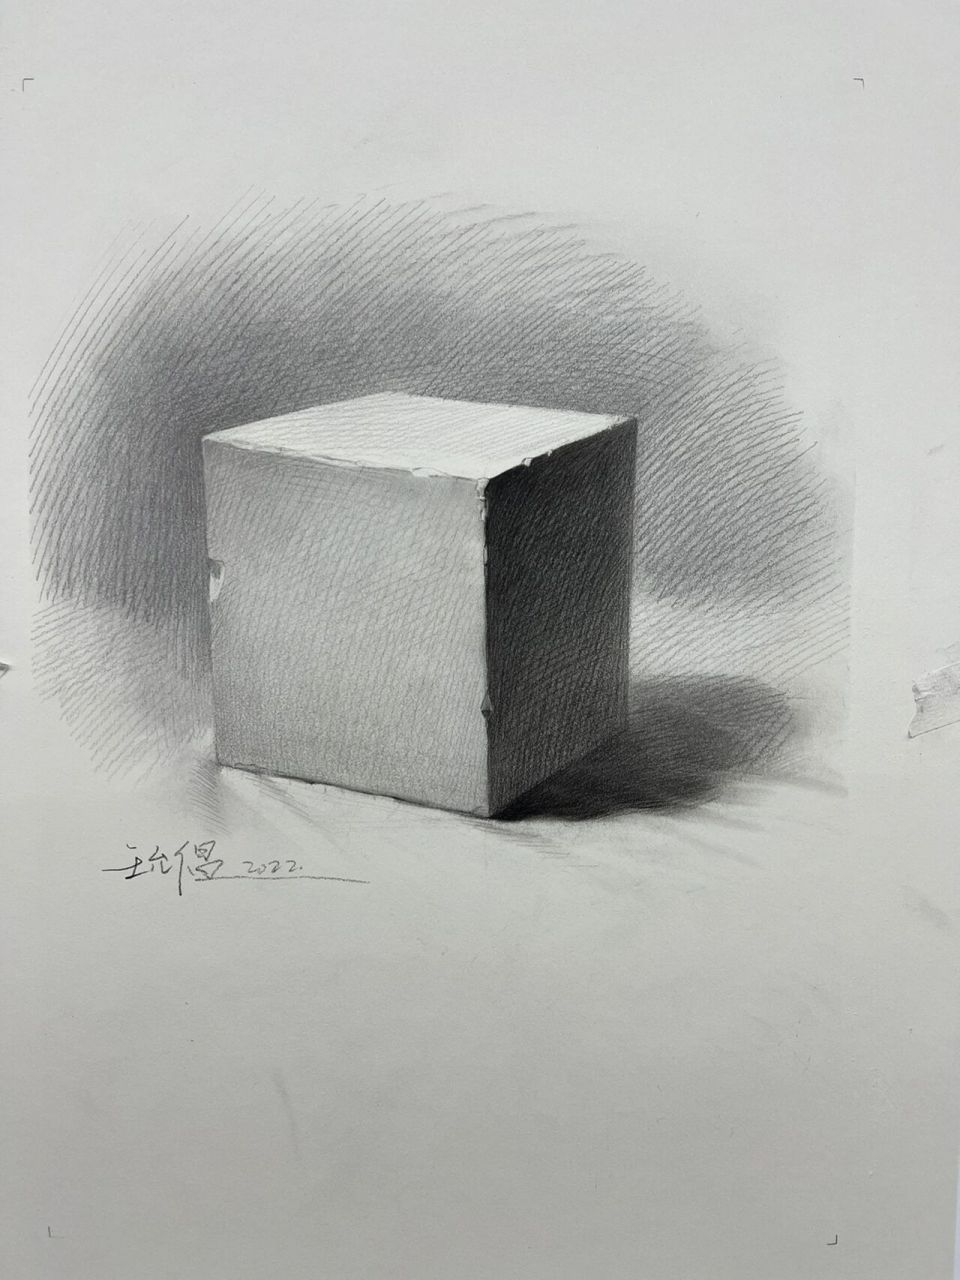 素描正方体 素描石膏正方体画法带步骤解析 步骤一:用14b概括正方体的